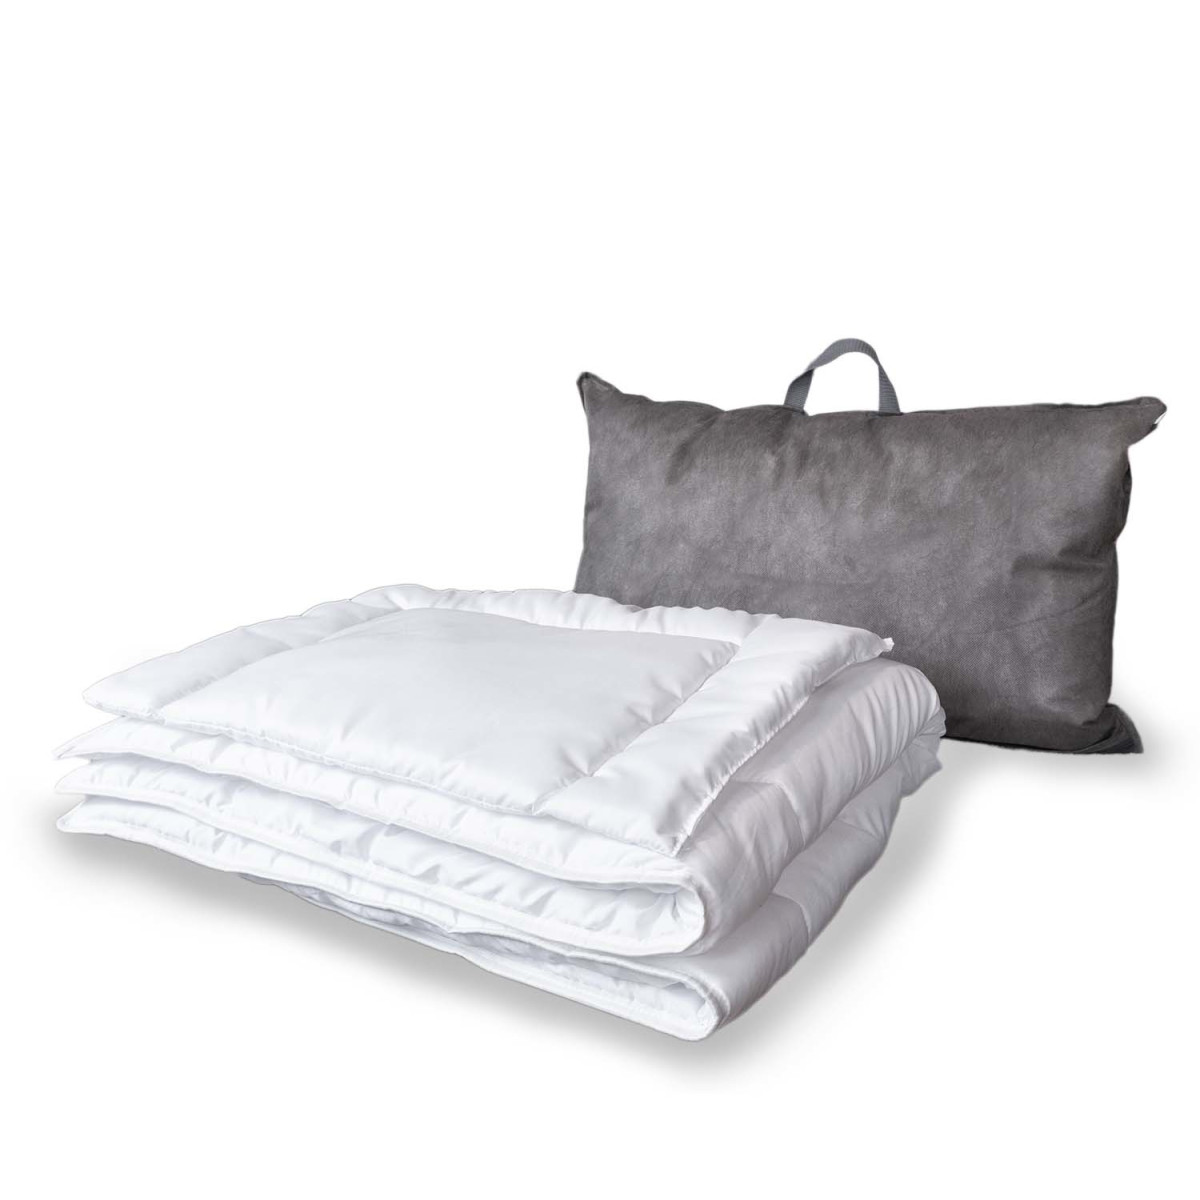 Praktisches Bettset: Steppdecke und Kissen aus Polyester 135x100 +  Aufbewahrung, 54,99 €